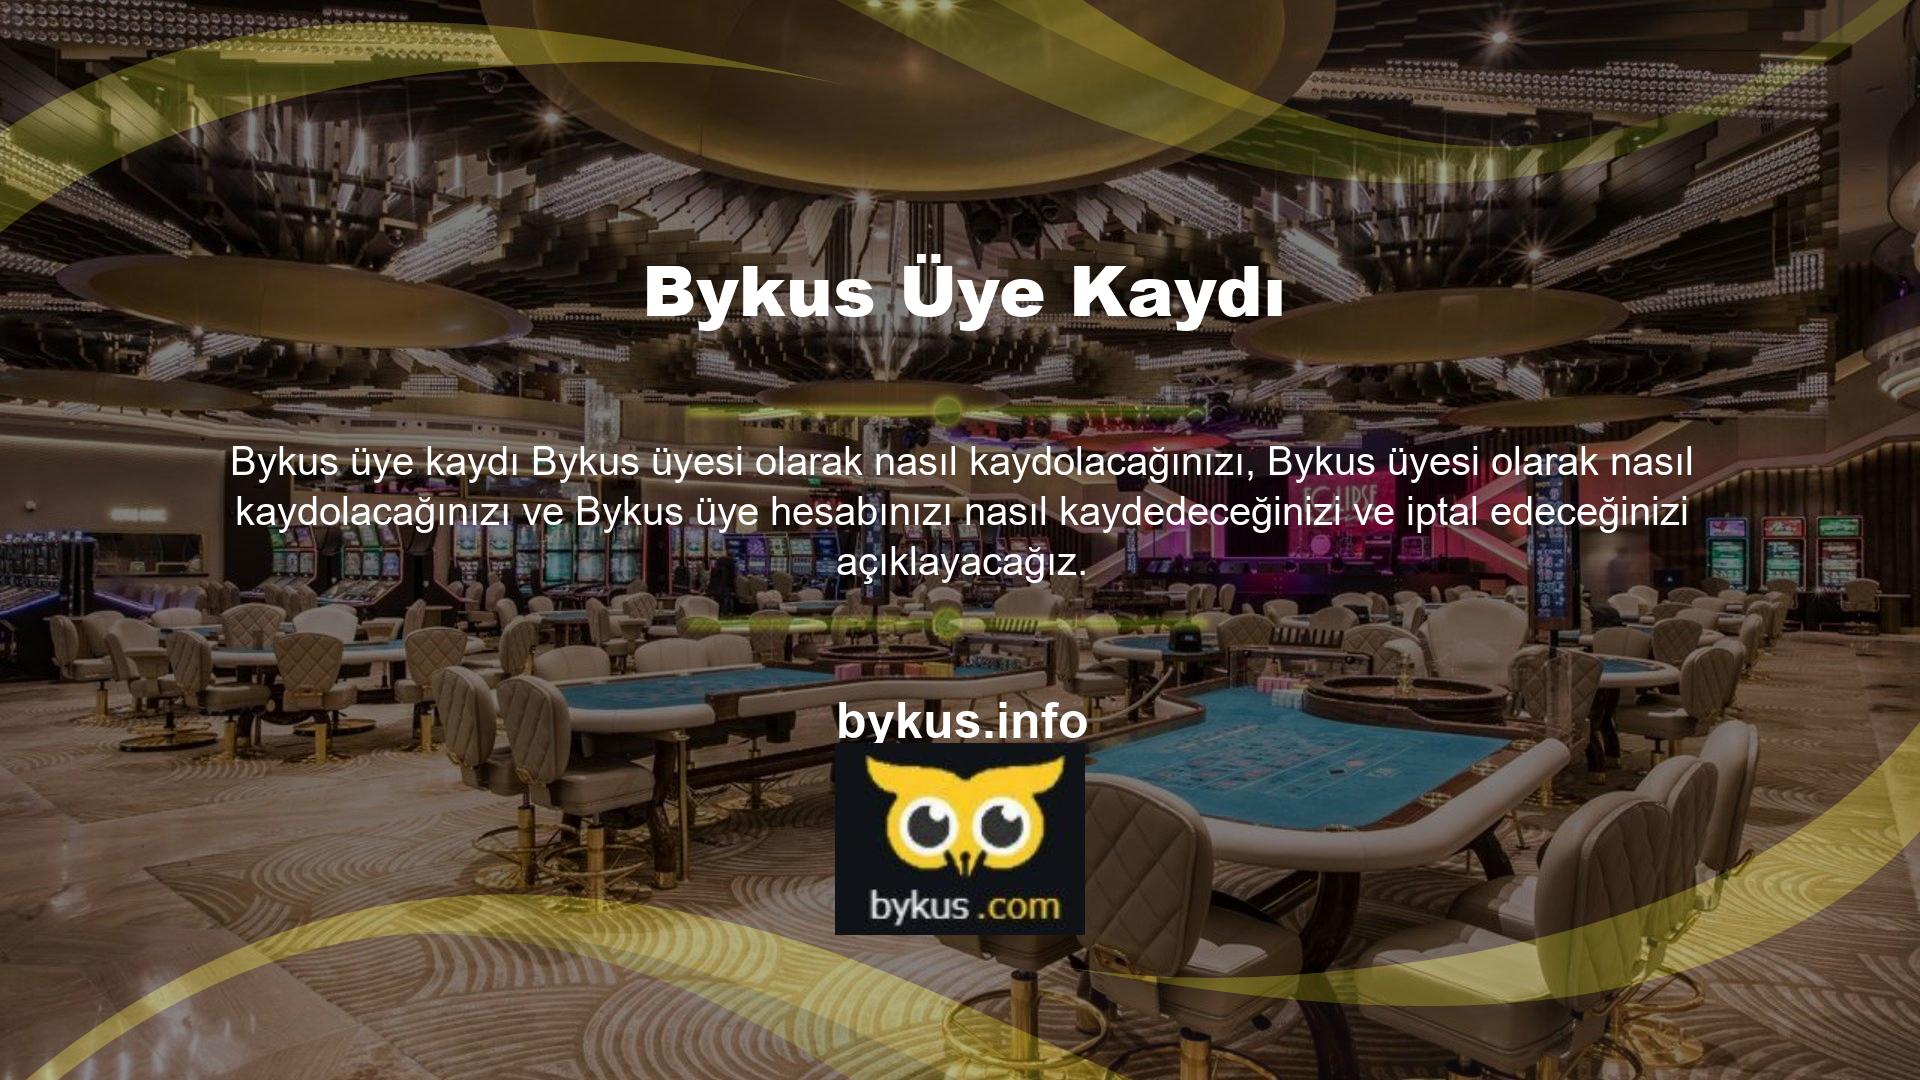 Bykus, Türkiye'nin en güvenilir casino sitelerinden biridir ancak birçok istisna vardır